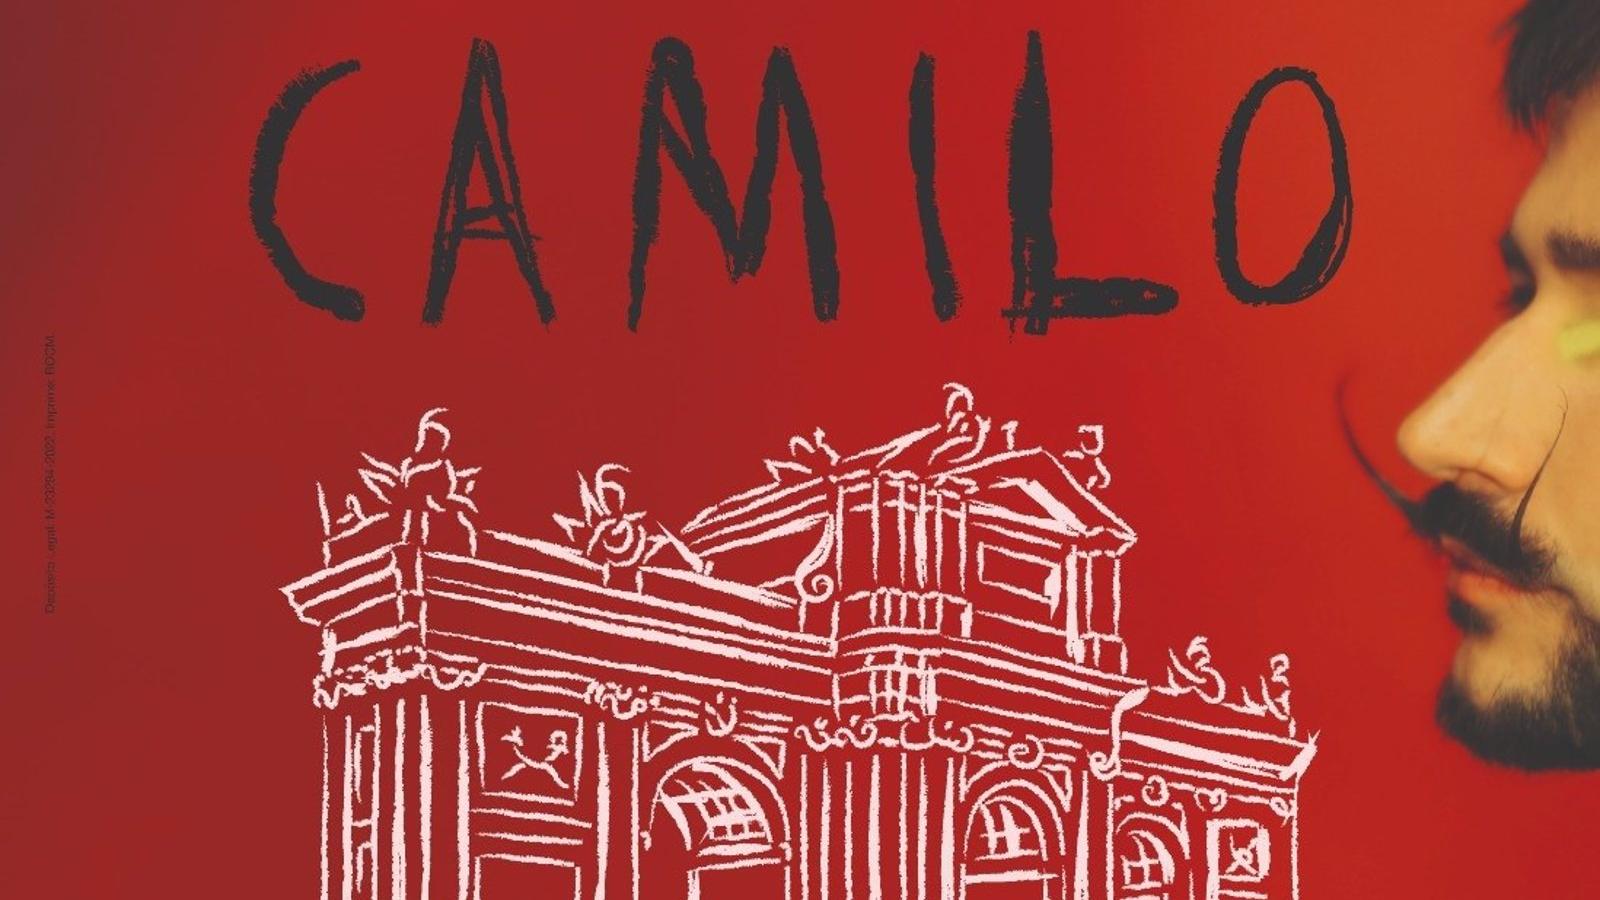 Un concierto gratuito de Camilo el 9 de octubre en la Puerta de Alcalá, plato fuerte de Hispanidad 2022